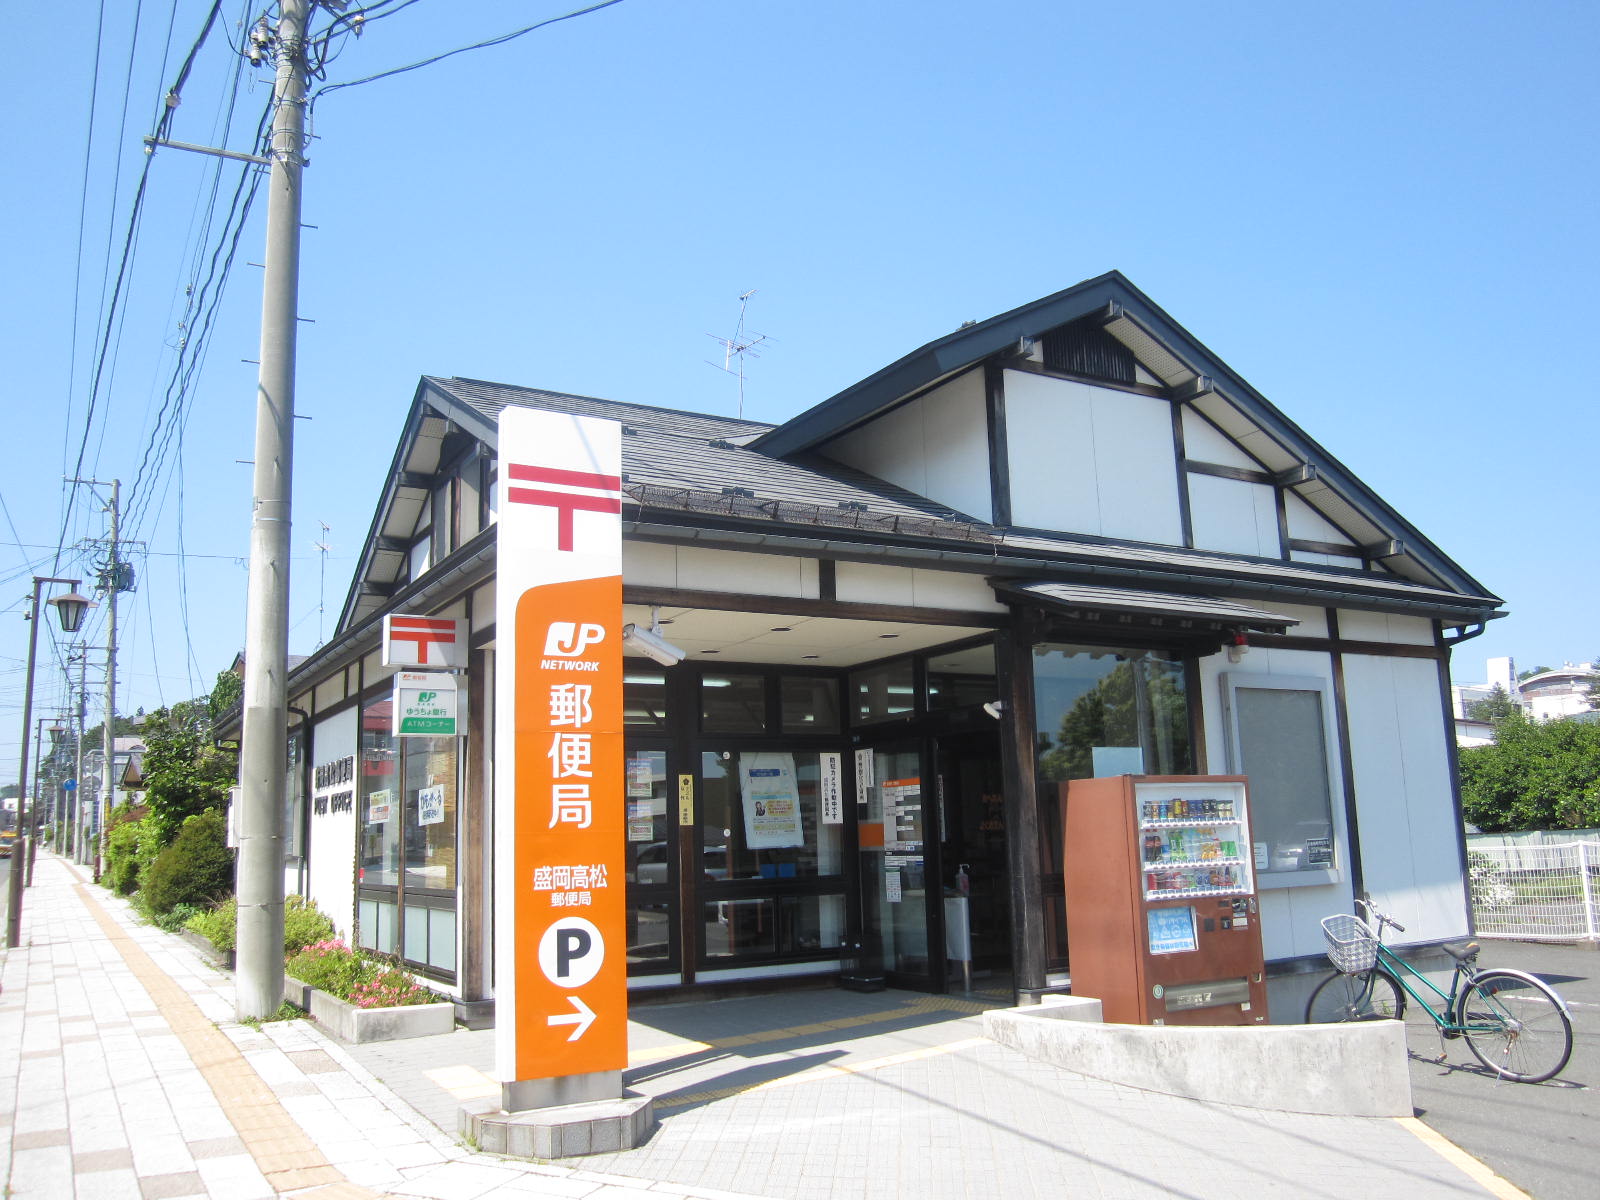 post office. 298m to Morioka Takamatsu post office (post office)